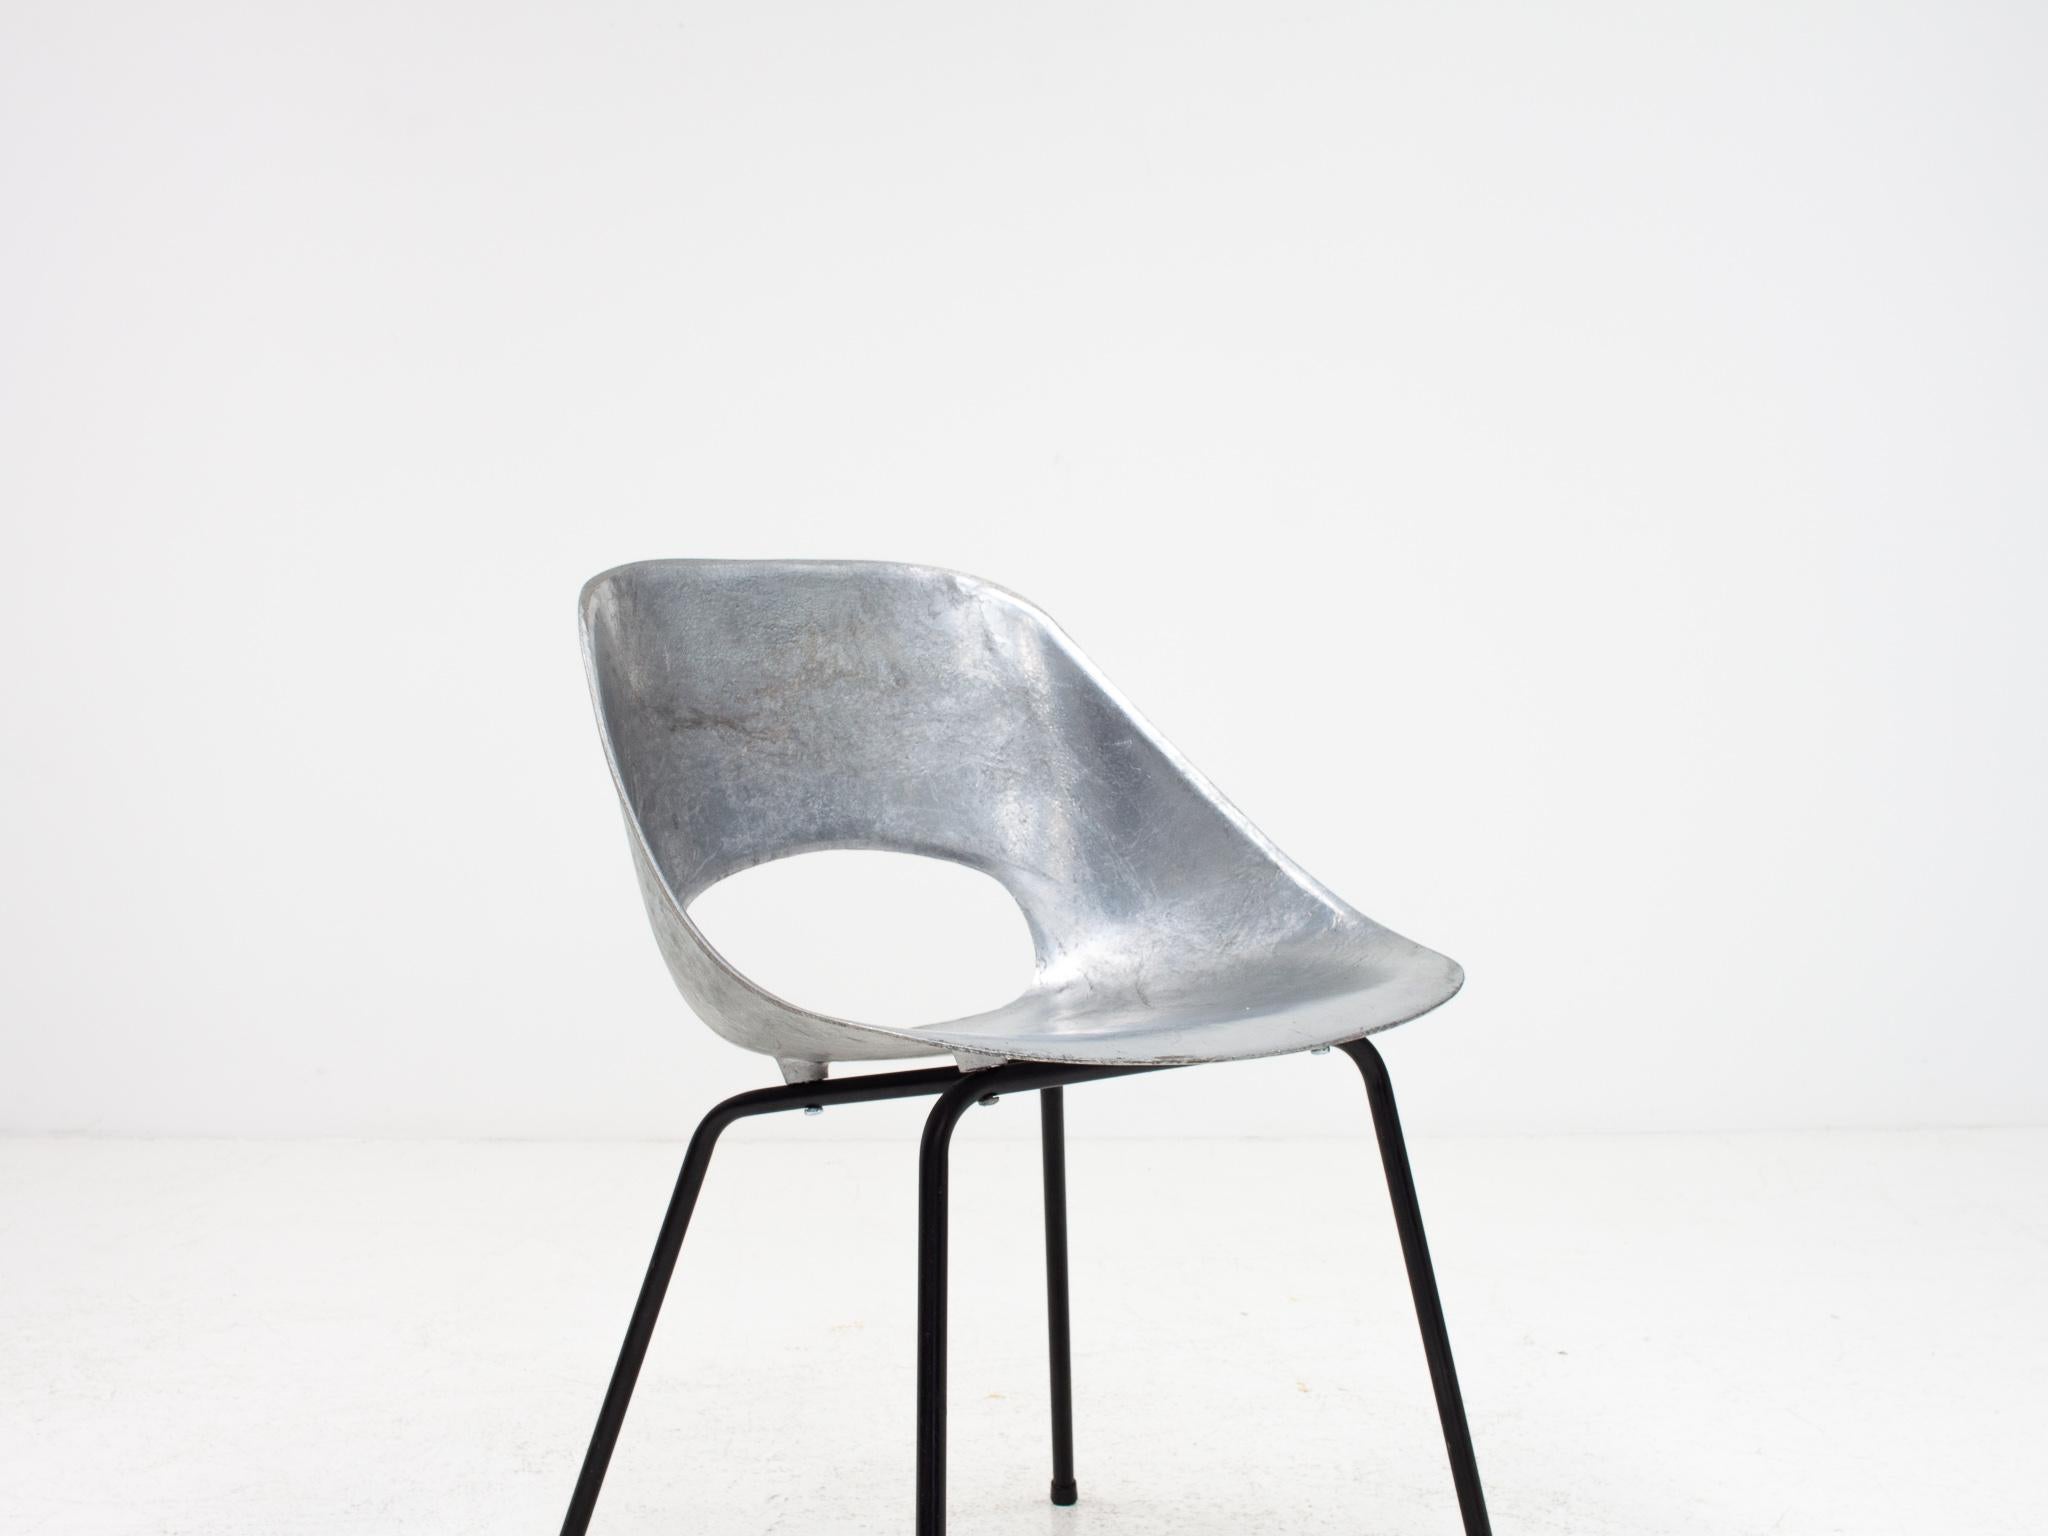 Pierre Guariche Tulip Chair, Cast Aluminum, Steiner Meubles, Paris, 1954 For Sale 5